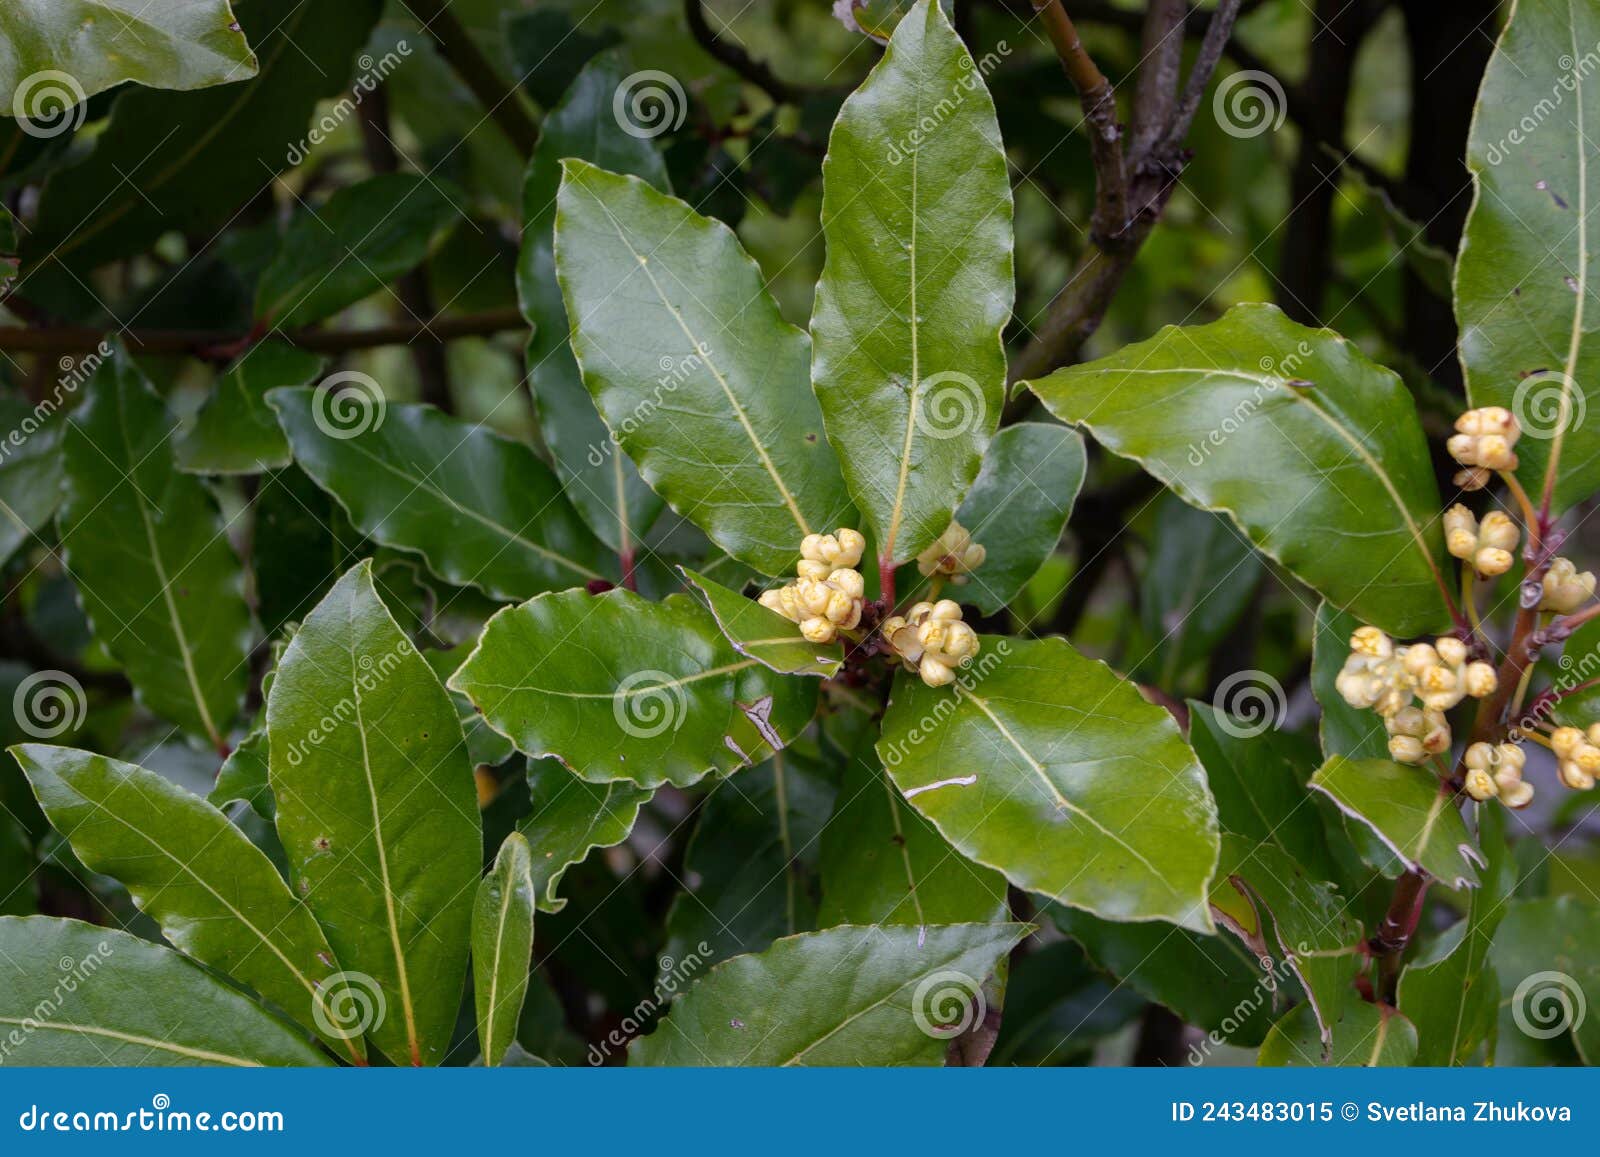 laurus nobilis or bay tree flowering branch